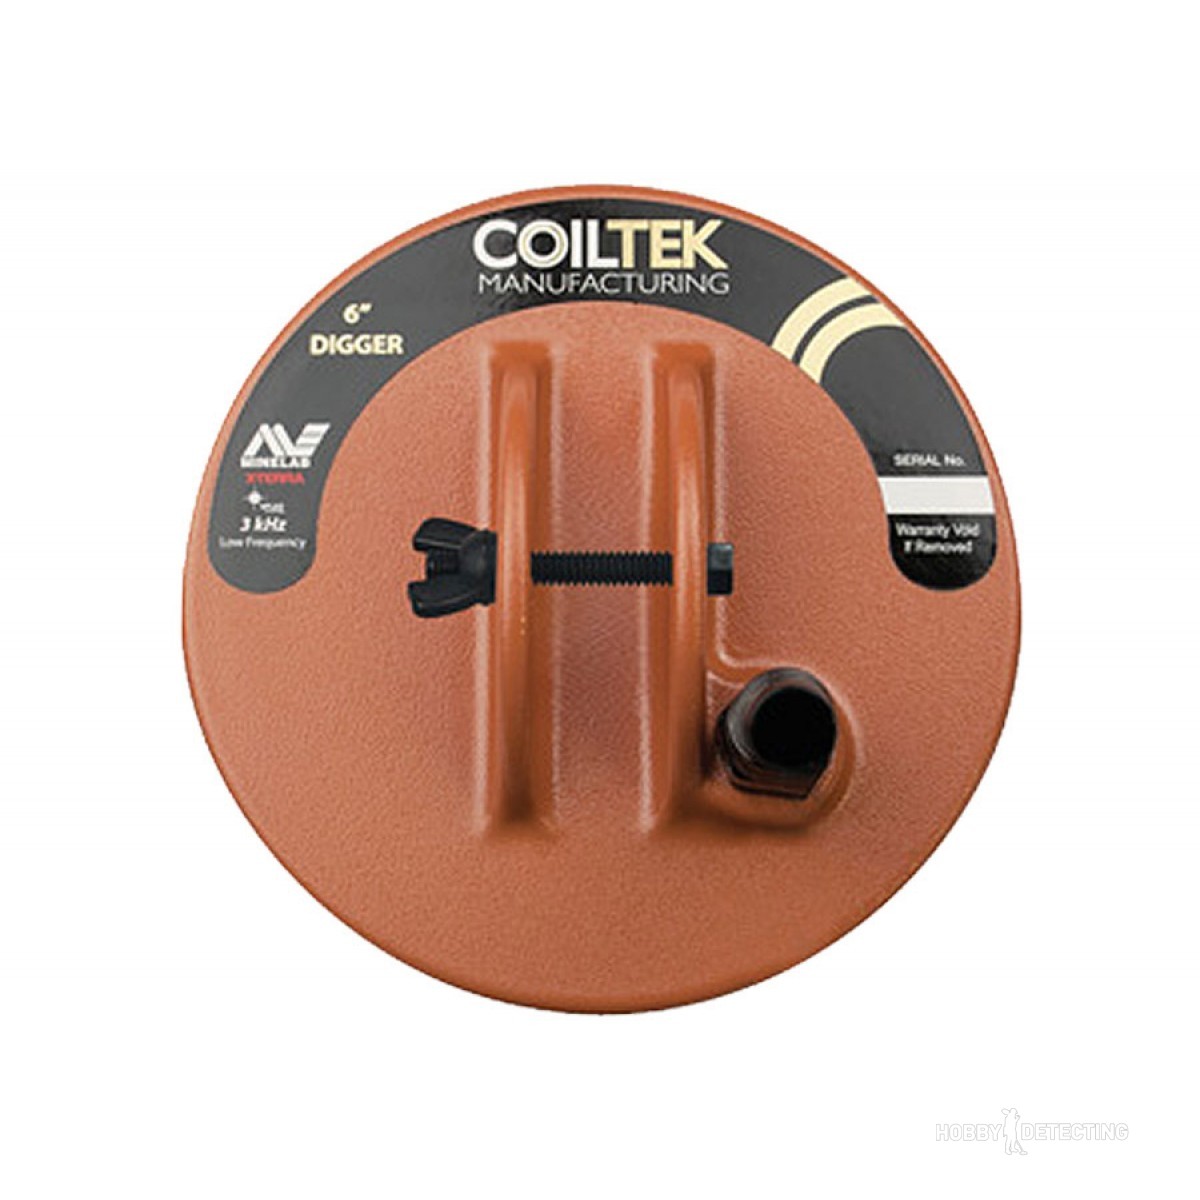 Coiltek 6 DD X-Terra Digger Coil